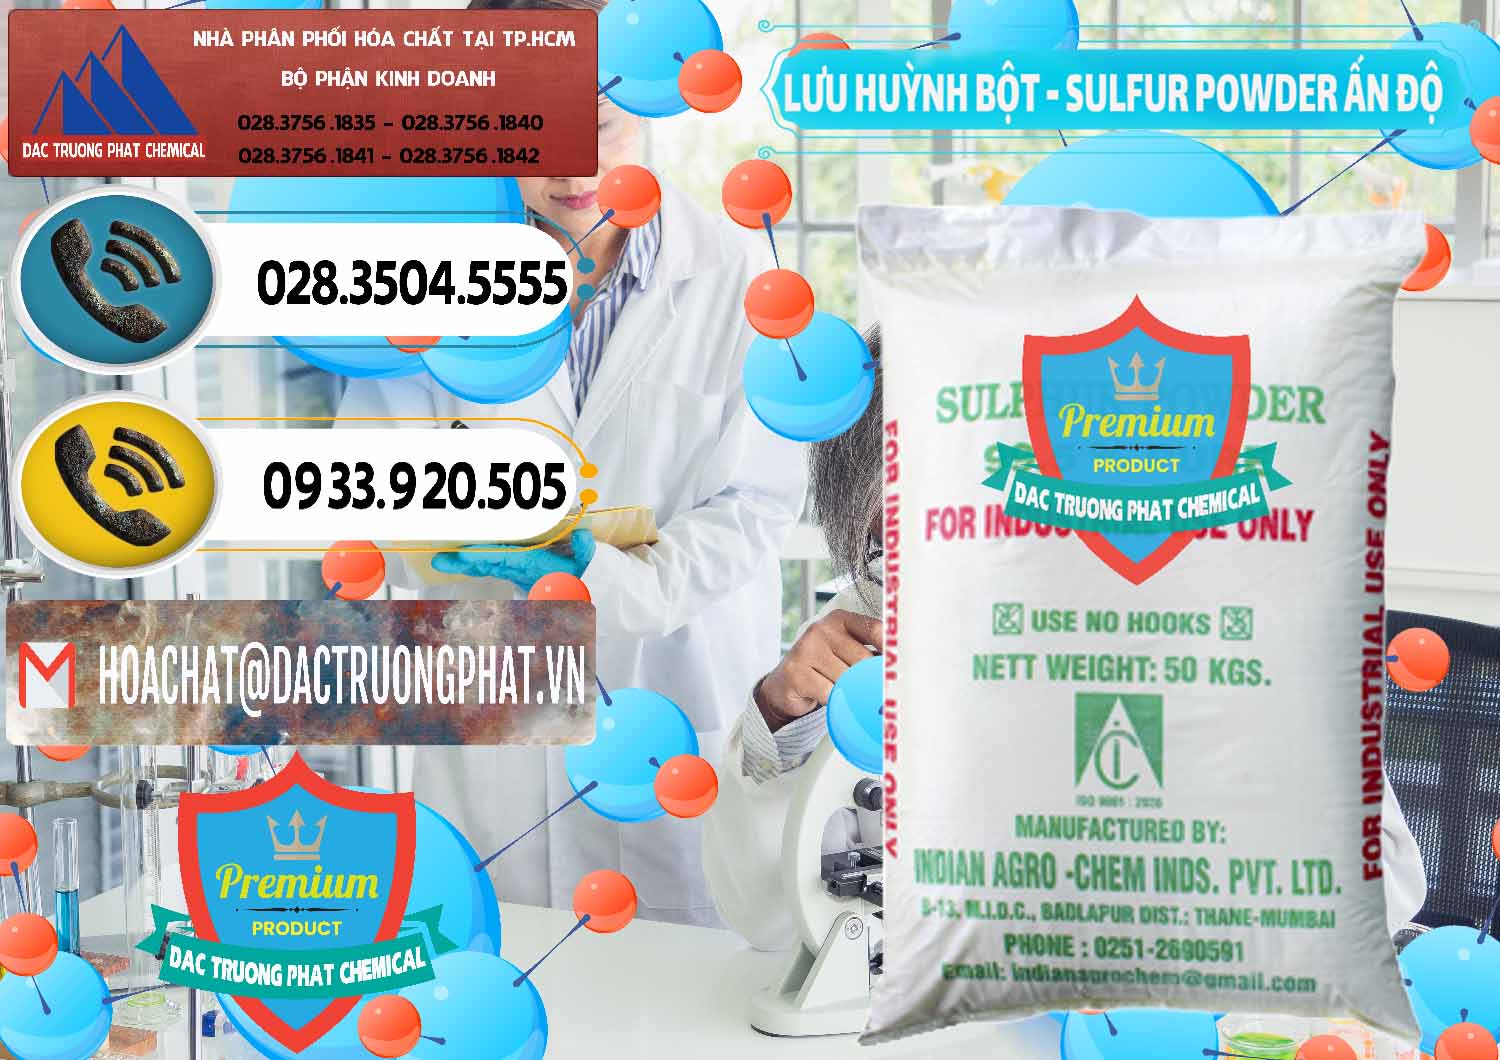 Nơi bán và cung ứng Lưu huỳnh Bột - Sulfur Powder Ấn Độ India - 0347 - Công ty nhập khẩu và phân phối hóa chất tại TP.HCM - hoachatdetnhuom.vn